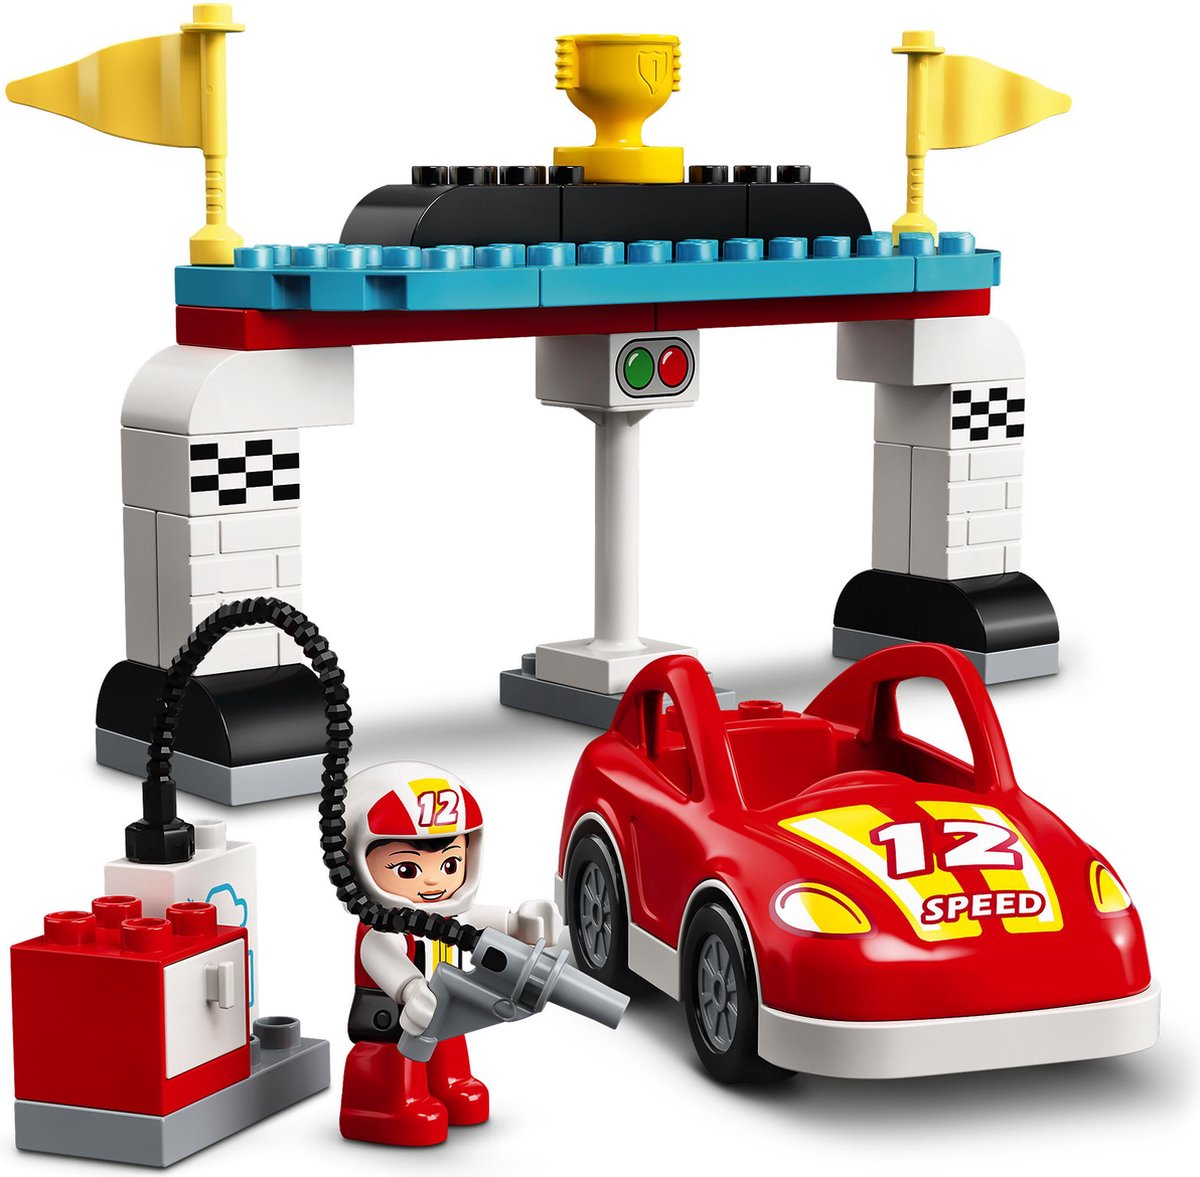 LEGO DUPLO Racewagens - 10947